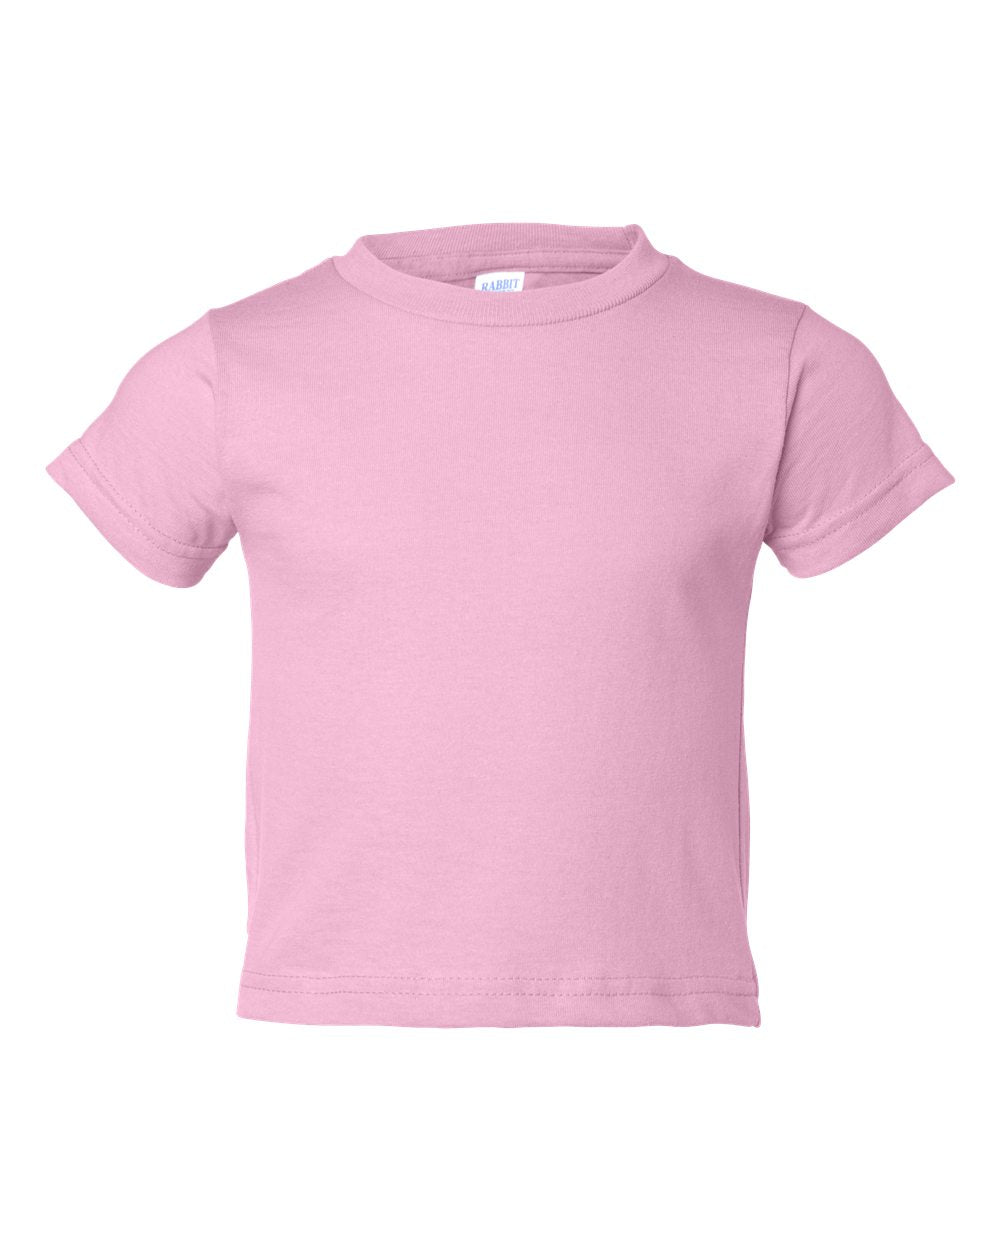 rabbit skins toddler cotton jersey tee pink